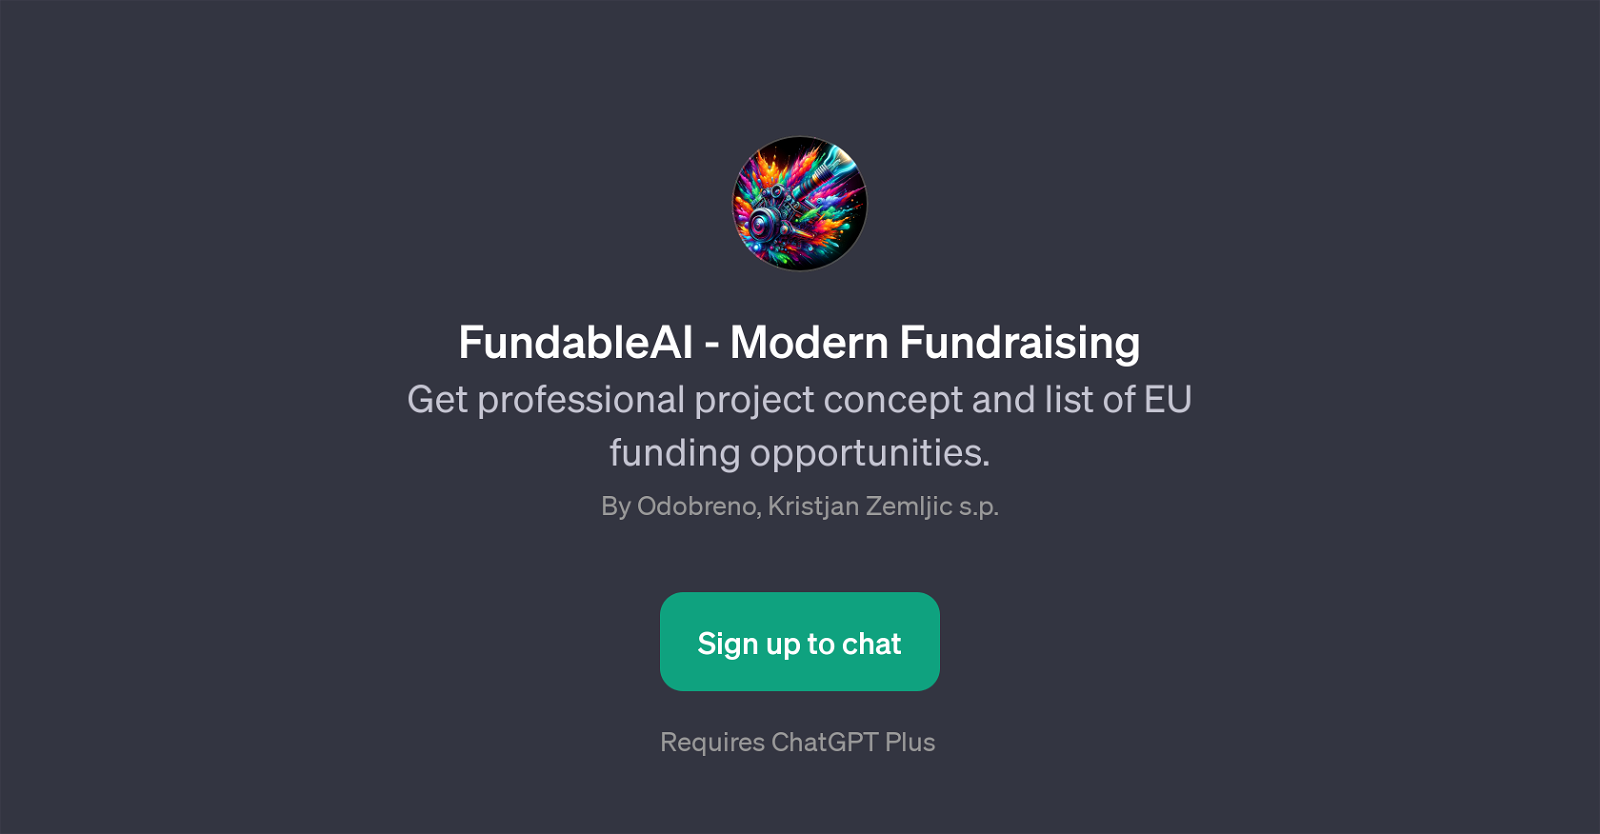 FundableAI website